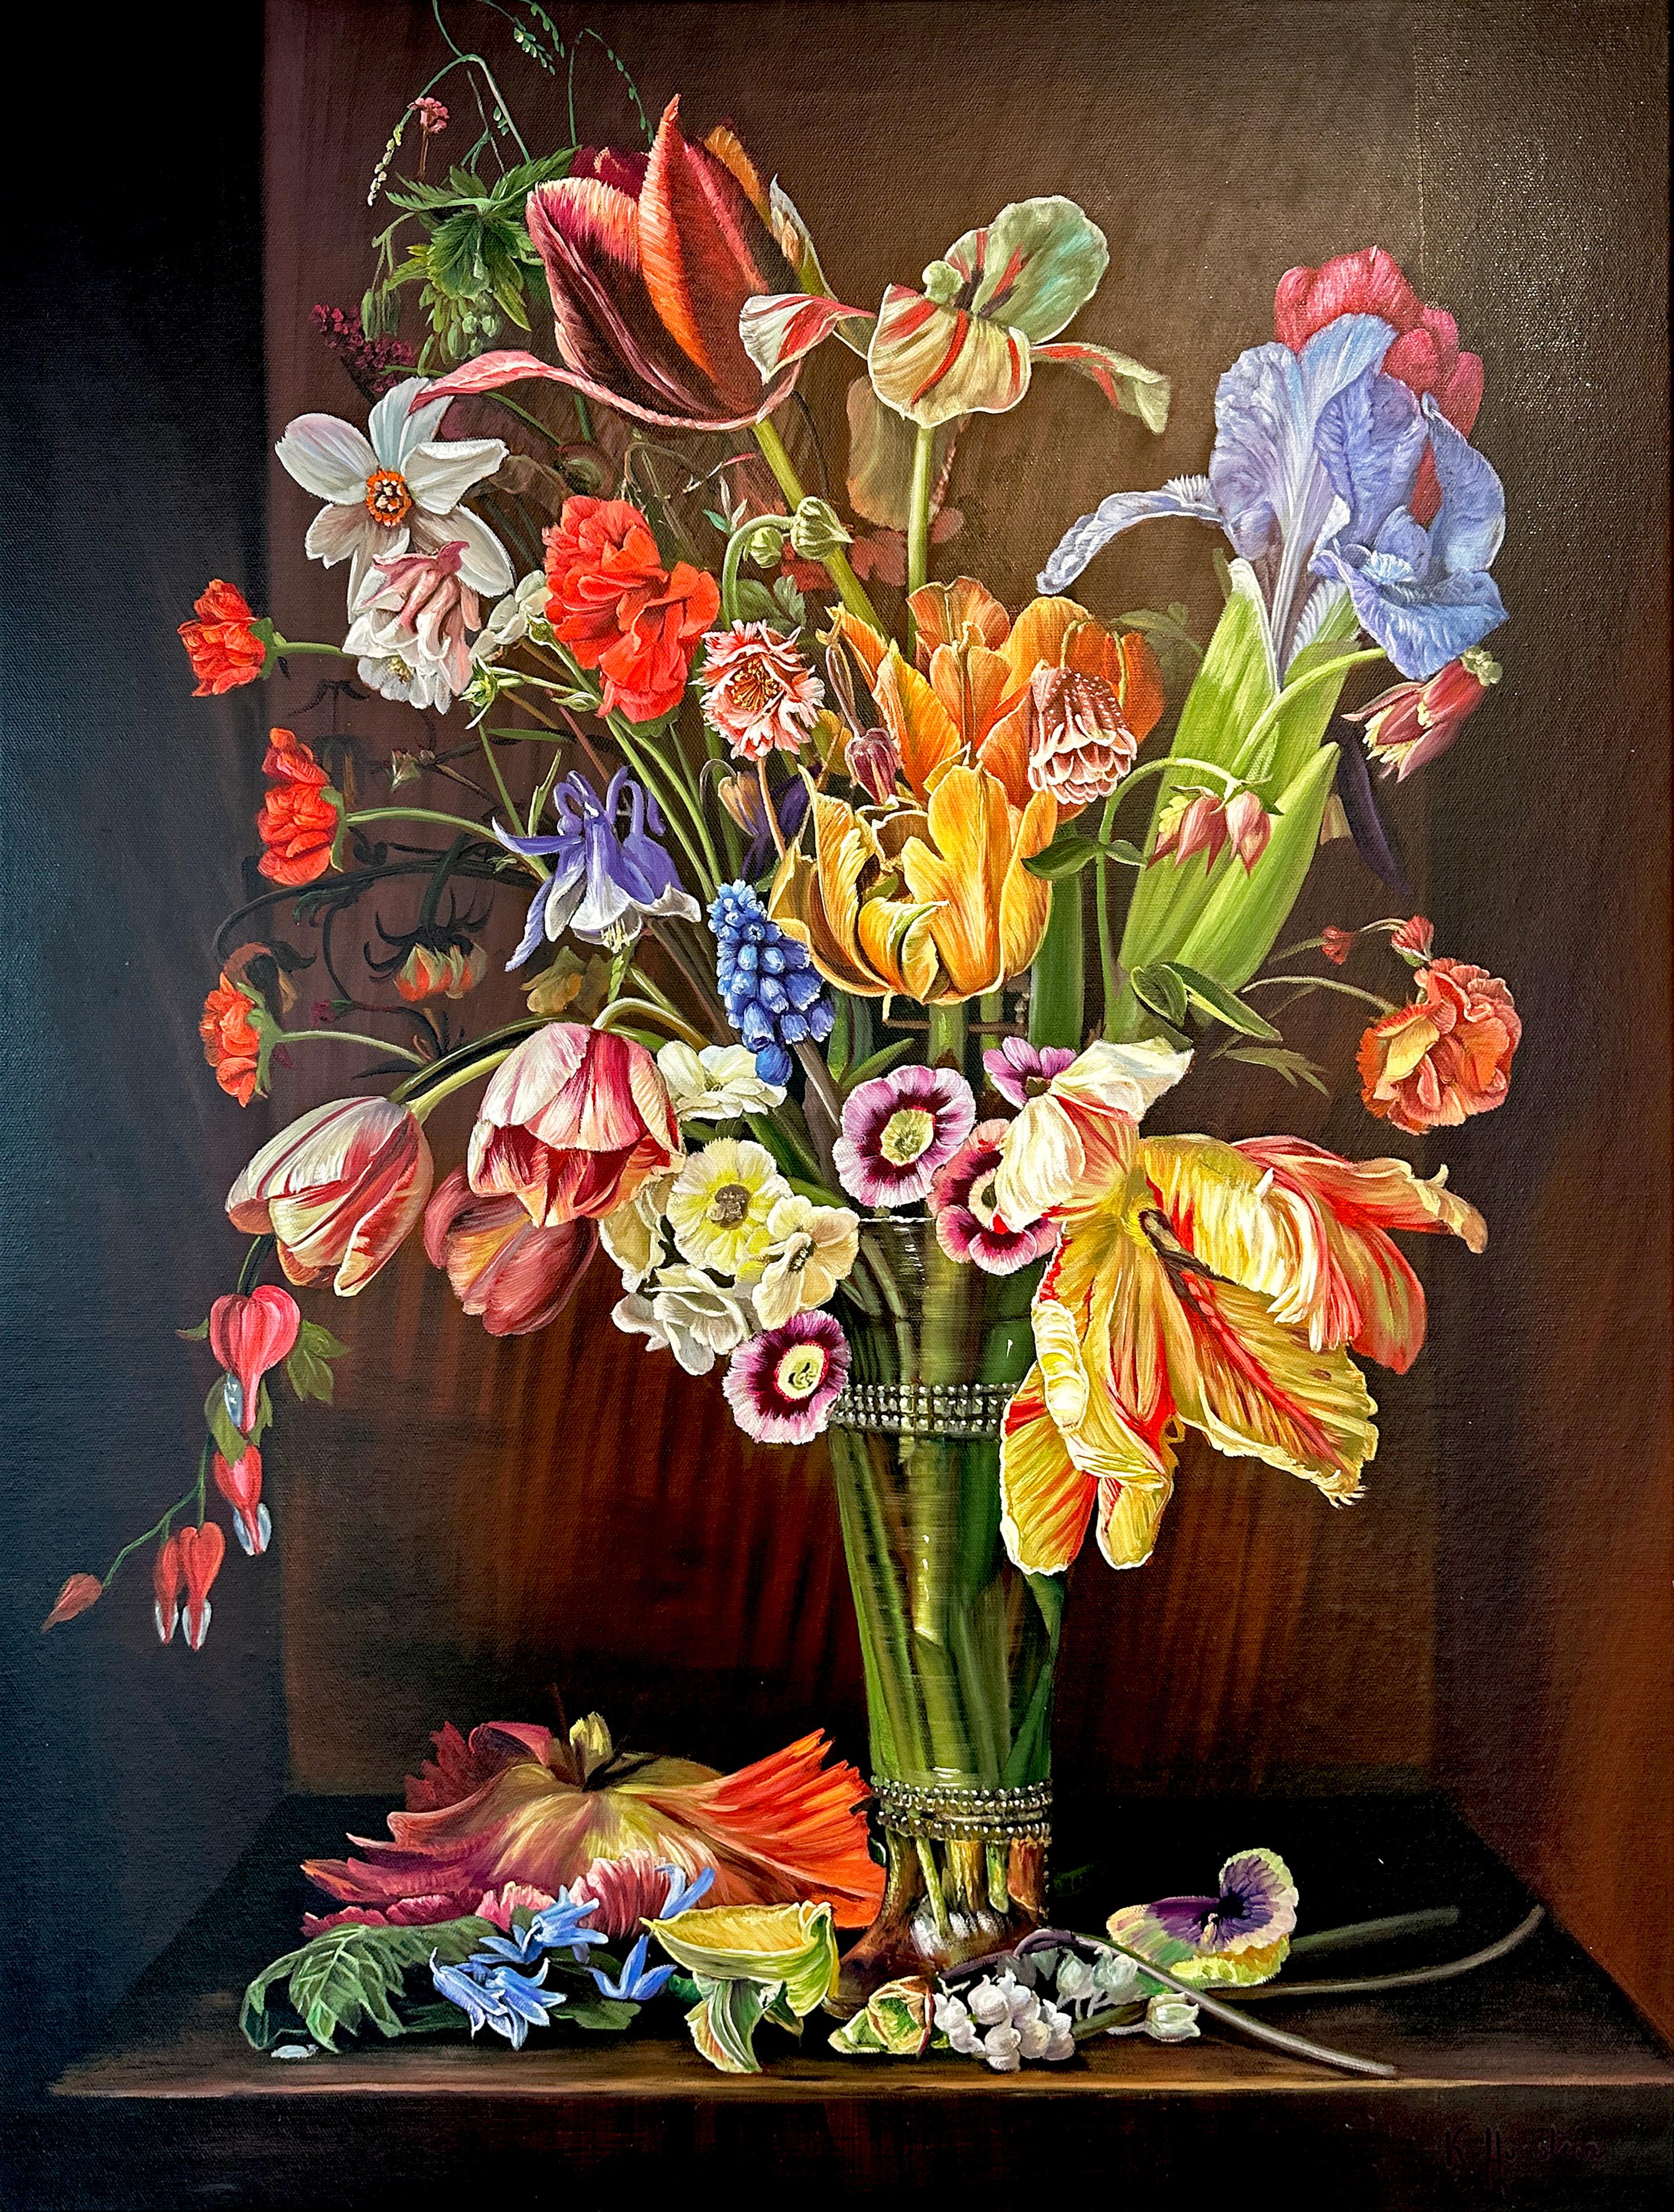 Il s'agit d'une belle peinture à l'huile représentant un ensemble de fleurs, de fraises et de framboises dans un vase.
Peinture contemporaine pleine de détails et de couleurs, de roses vibrantes, de pivoines et d'un arrangement d'autres fleurs.